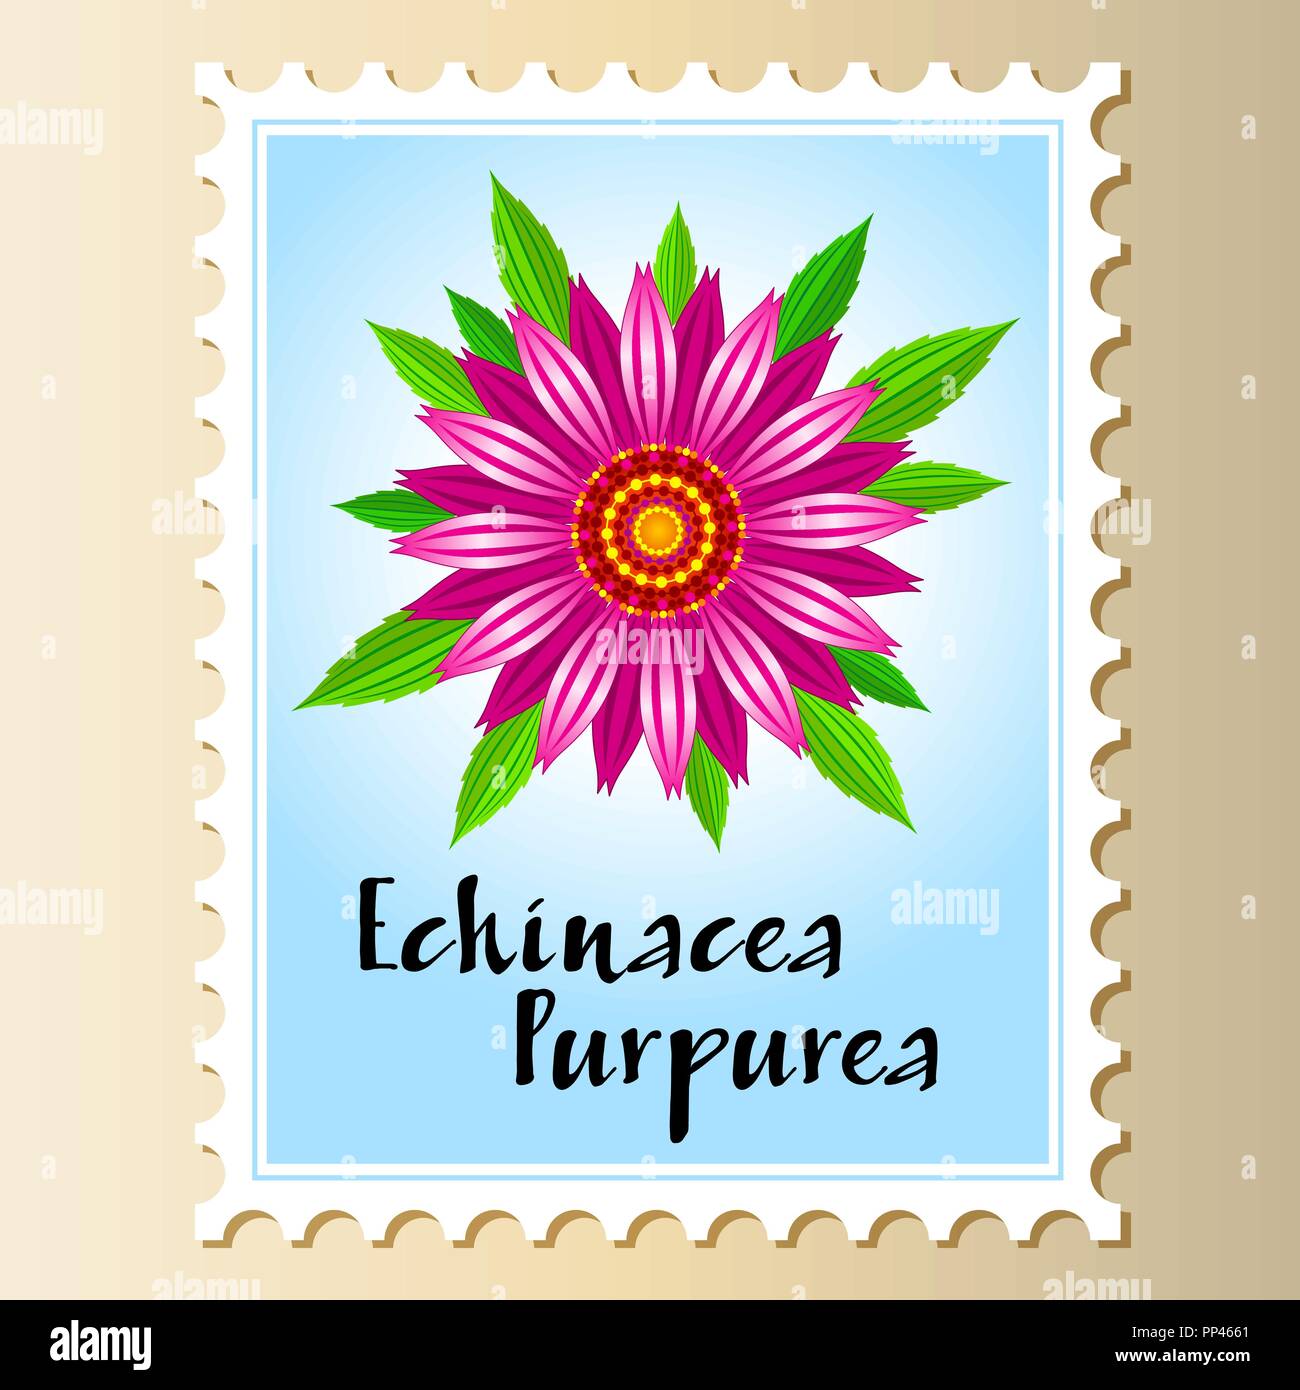 Echinacea purpurea fiore vettoriali su un francobollo. Illustrazione Vettoriale